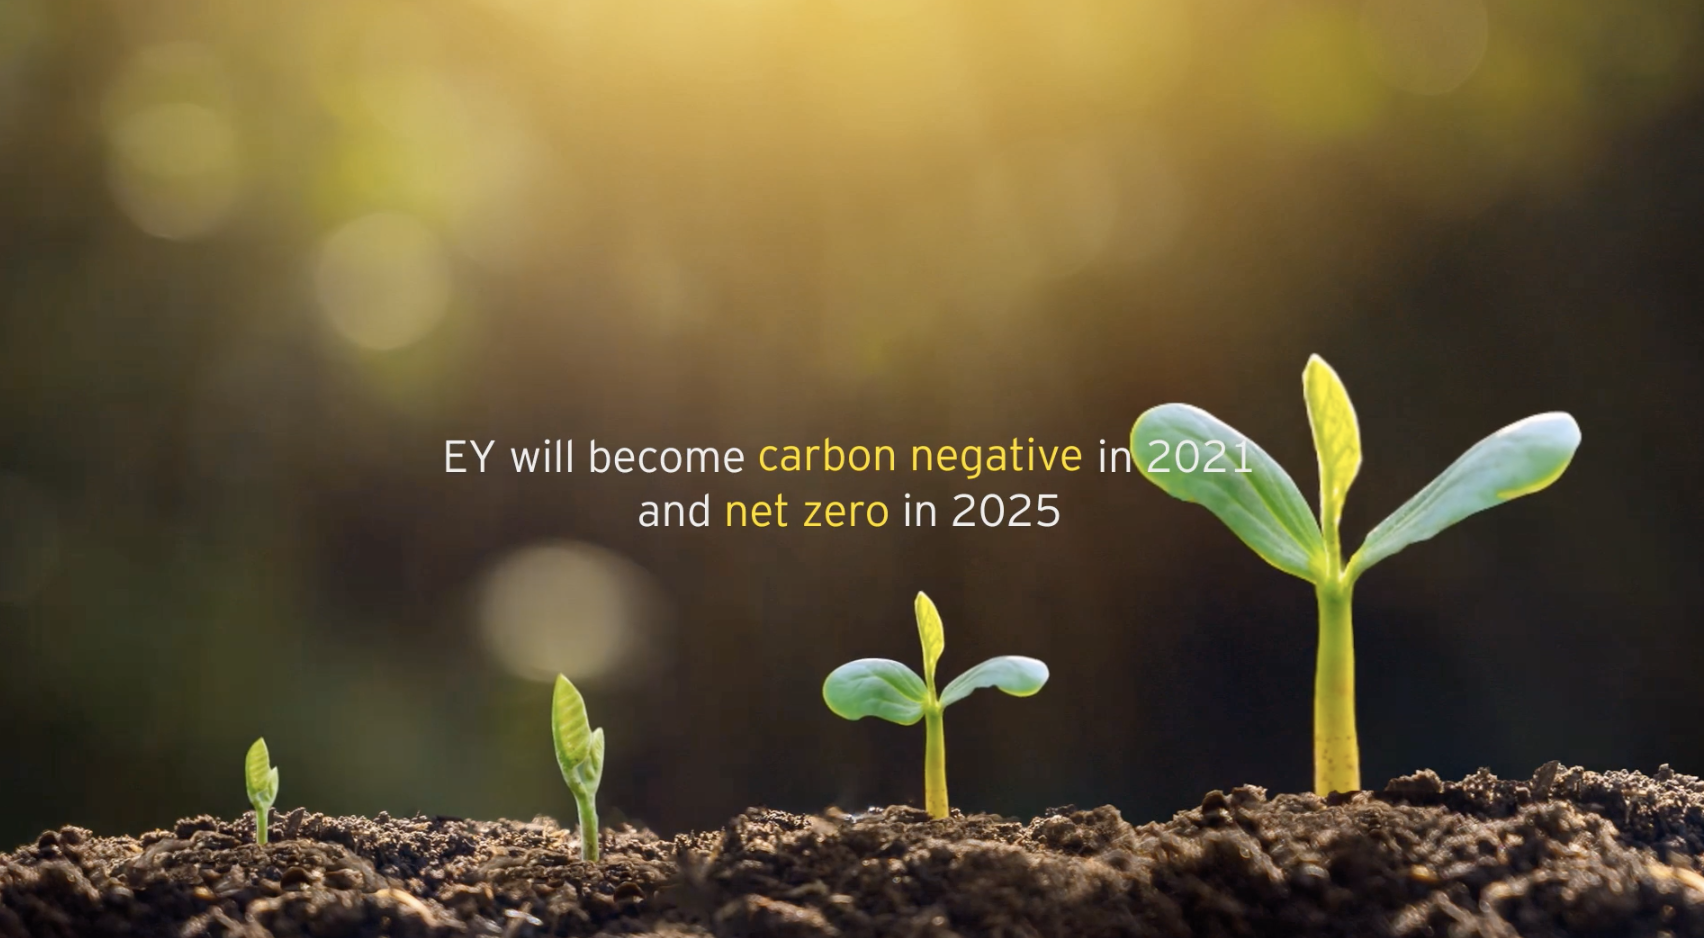 EY tendrá una huella negativa de carbono en 2021 y será emisor neto cero en 2025